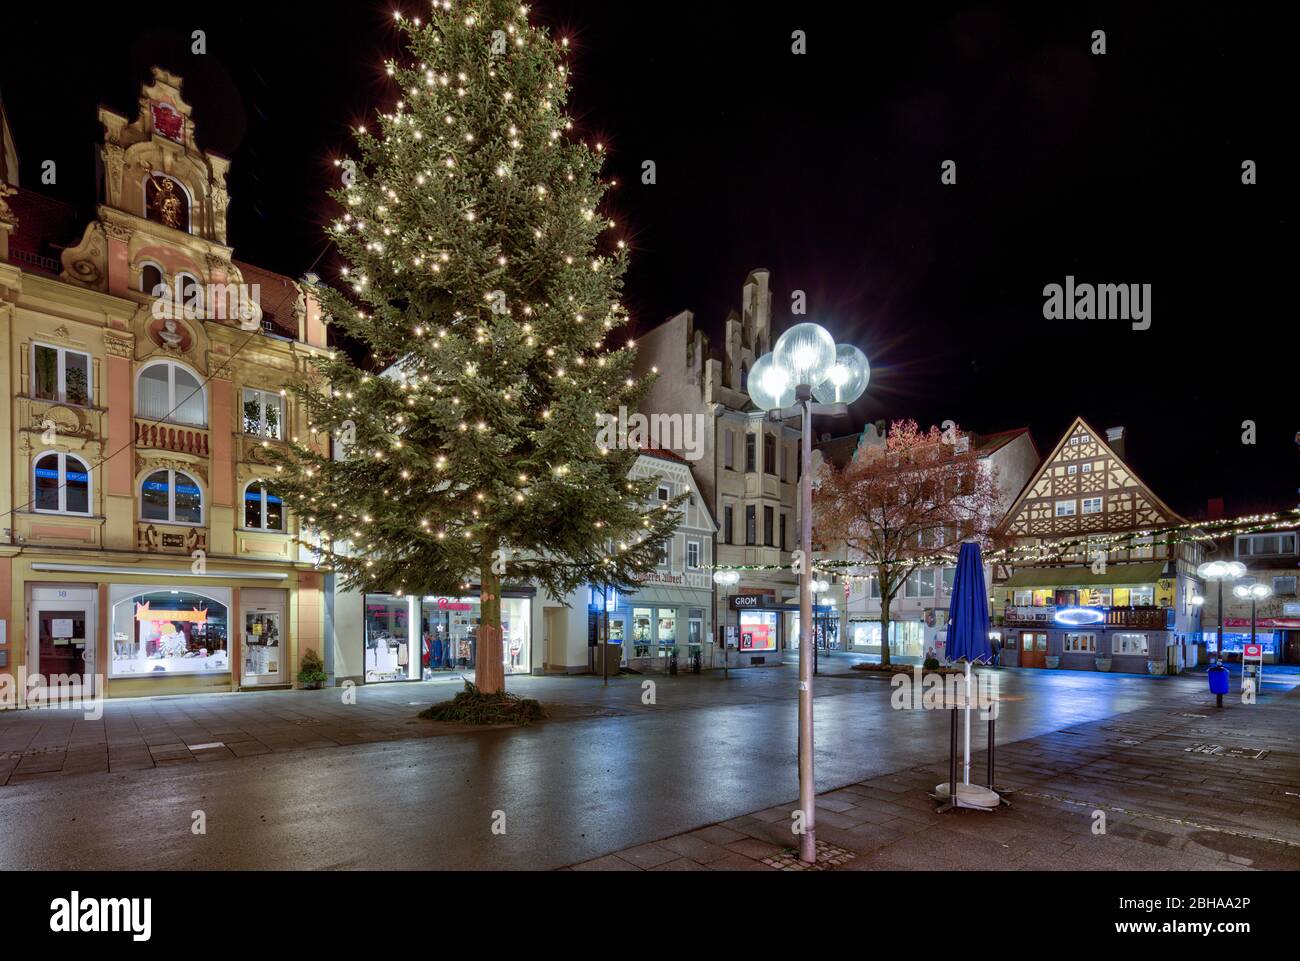 Marktplatz, Fußgängerzentrum, Kurstadt, Abend, Weihnachtsdekoration, Bad Kissingen, Franken, Bayern, Deutschland, Stock Photo